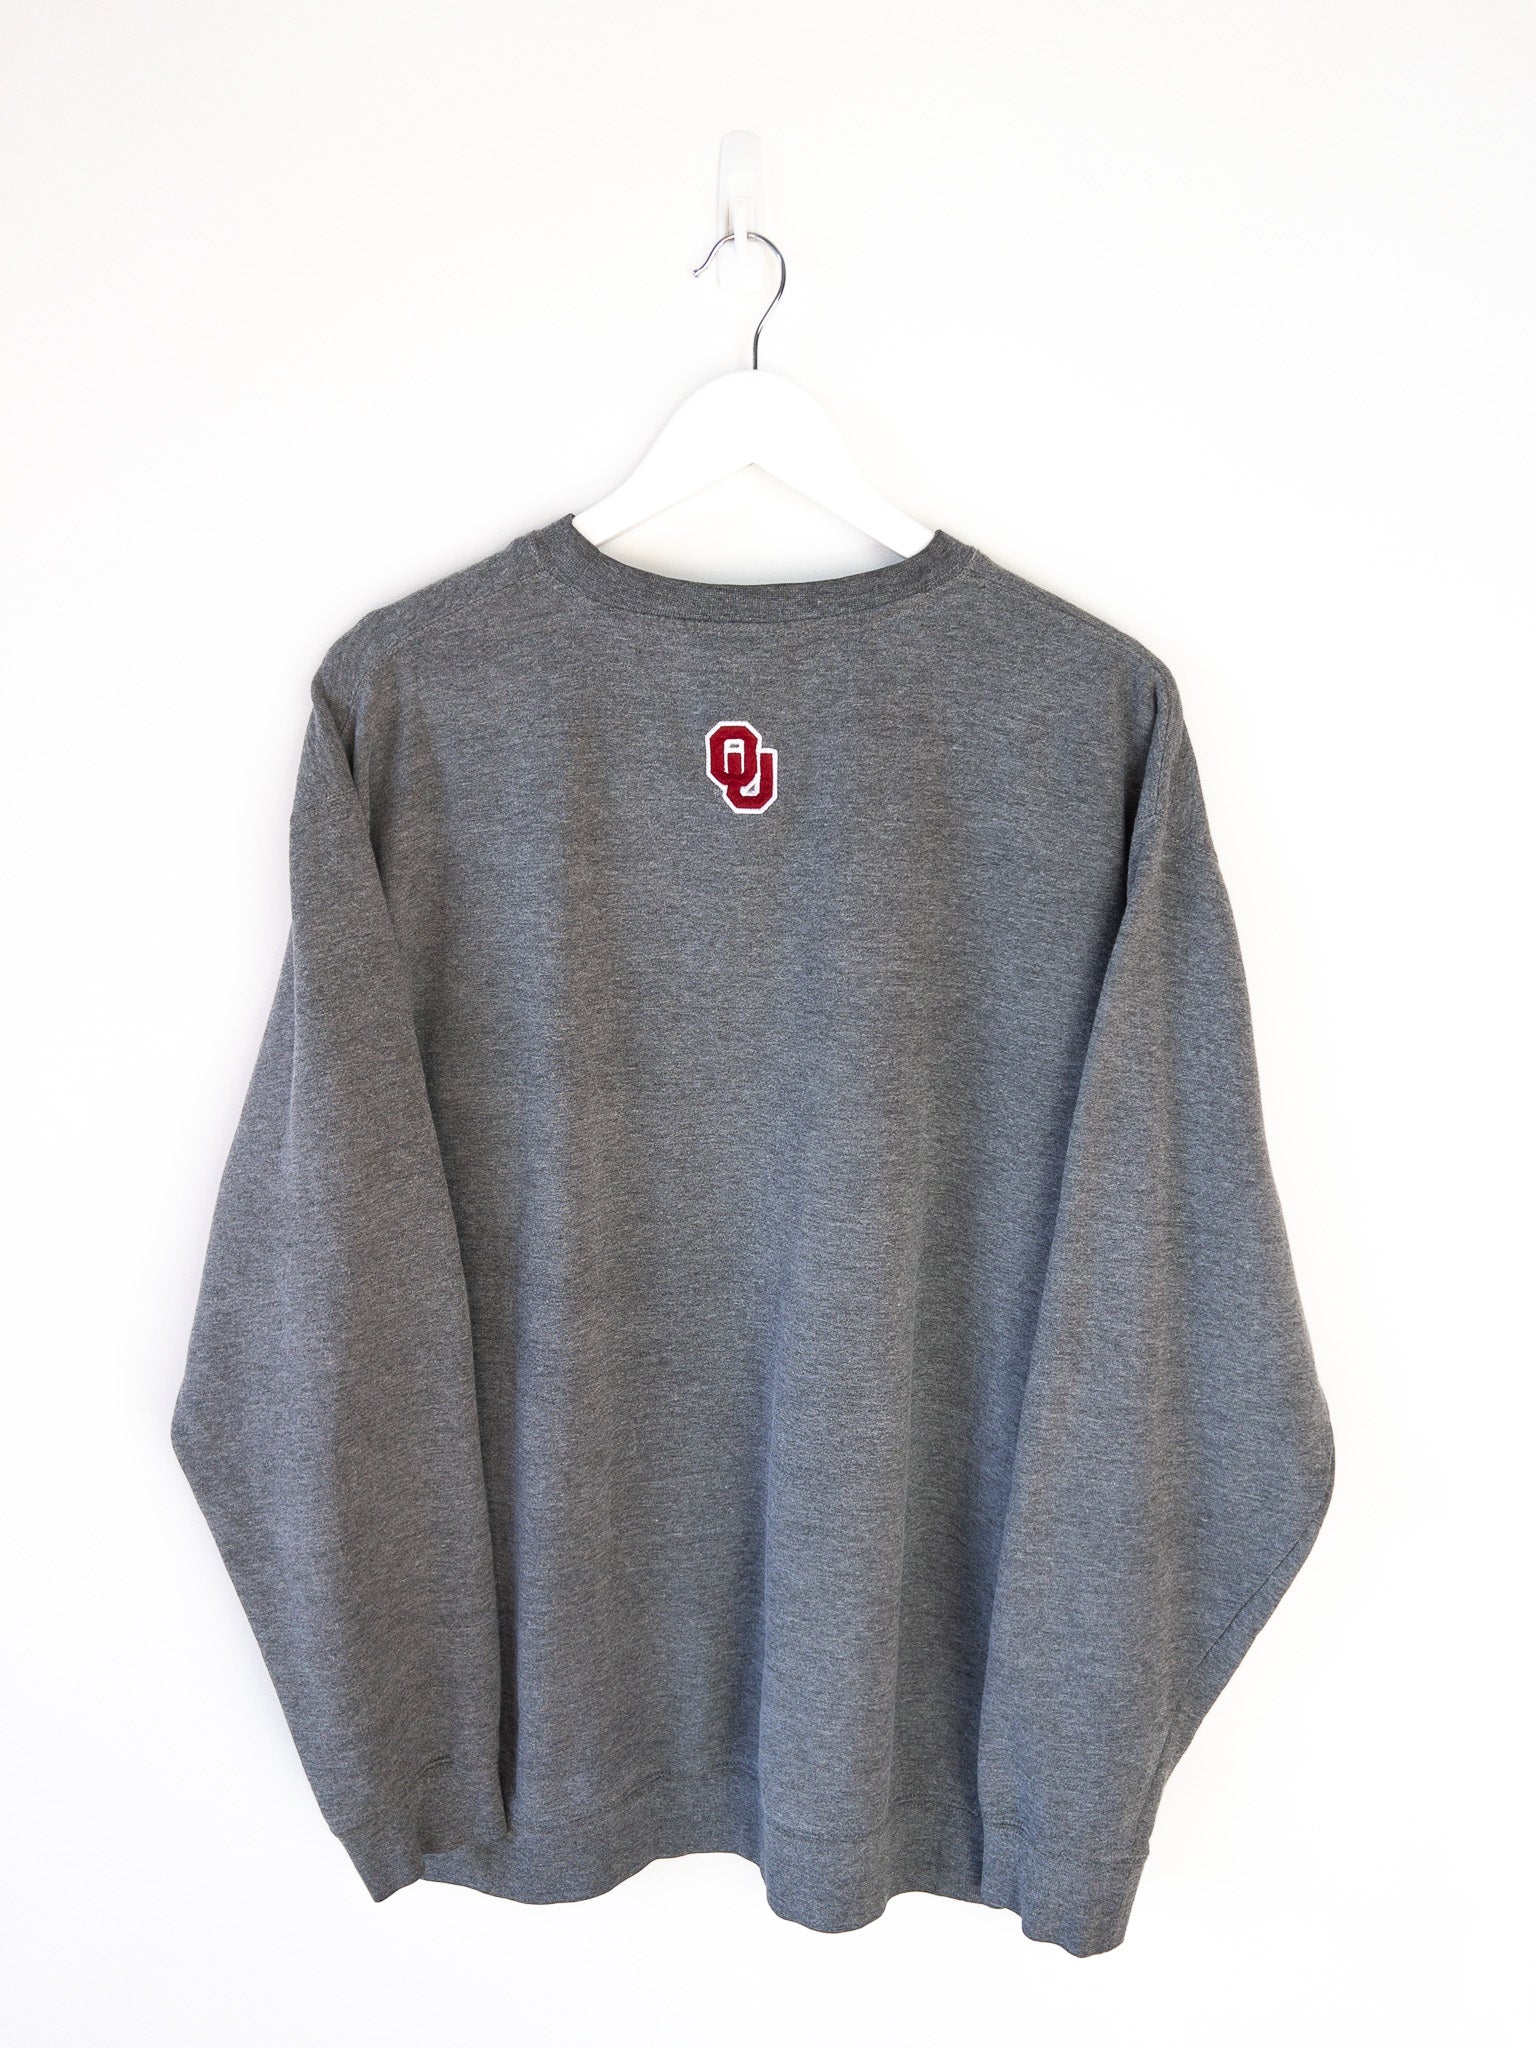 Vintage Oklahoma Sooners Sweatshirt (L)